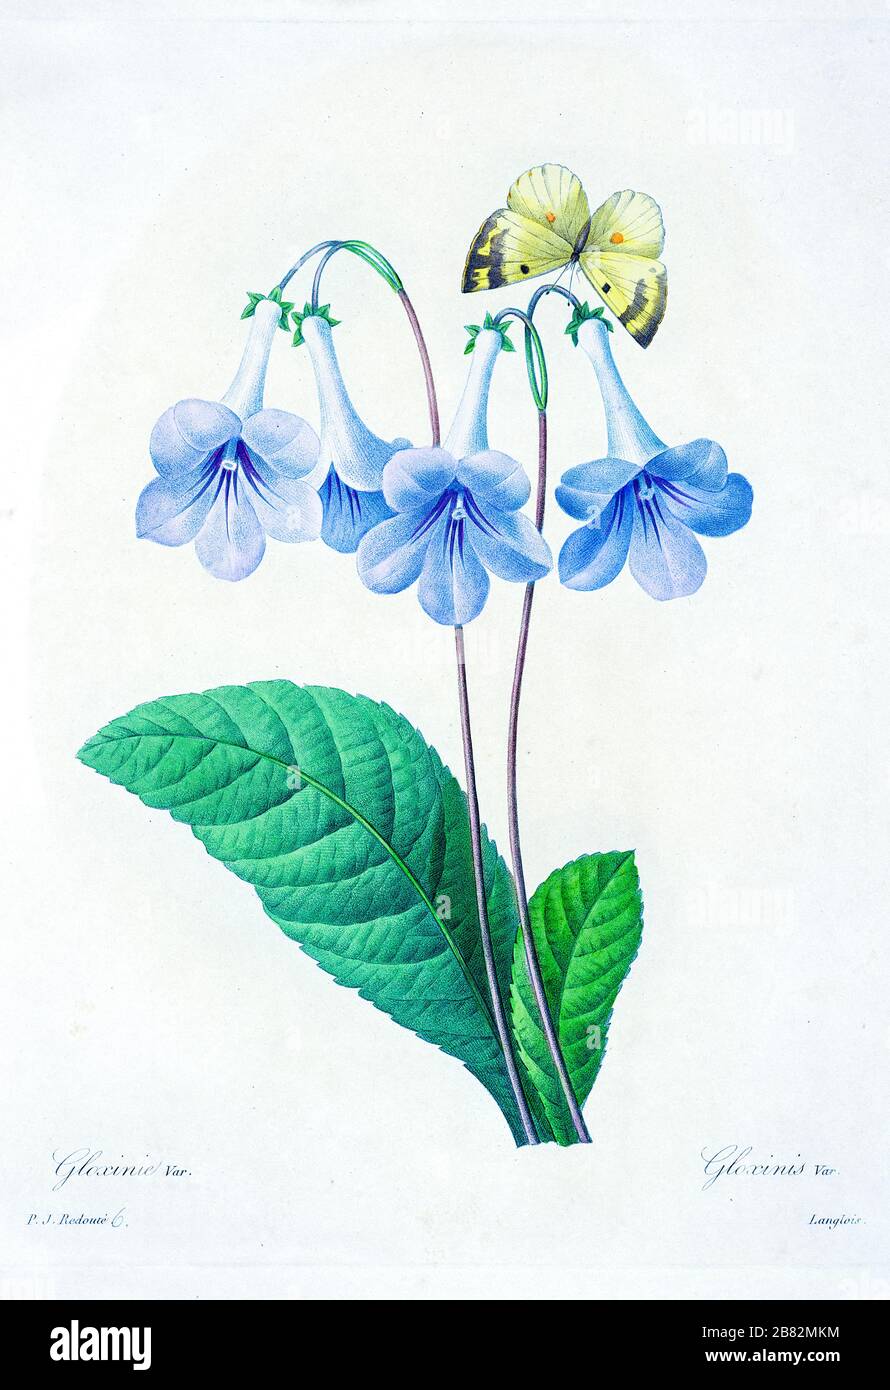 Gloxinia es un género de tres especies de hierbas rizomatosas tropicales de  la familia de plantas con flores Gesneriaceae de Pierre-Joseph Redoute.  Publicado en Choix Des Plus Belles Fleurs, París (1827). Por